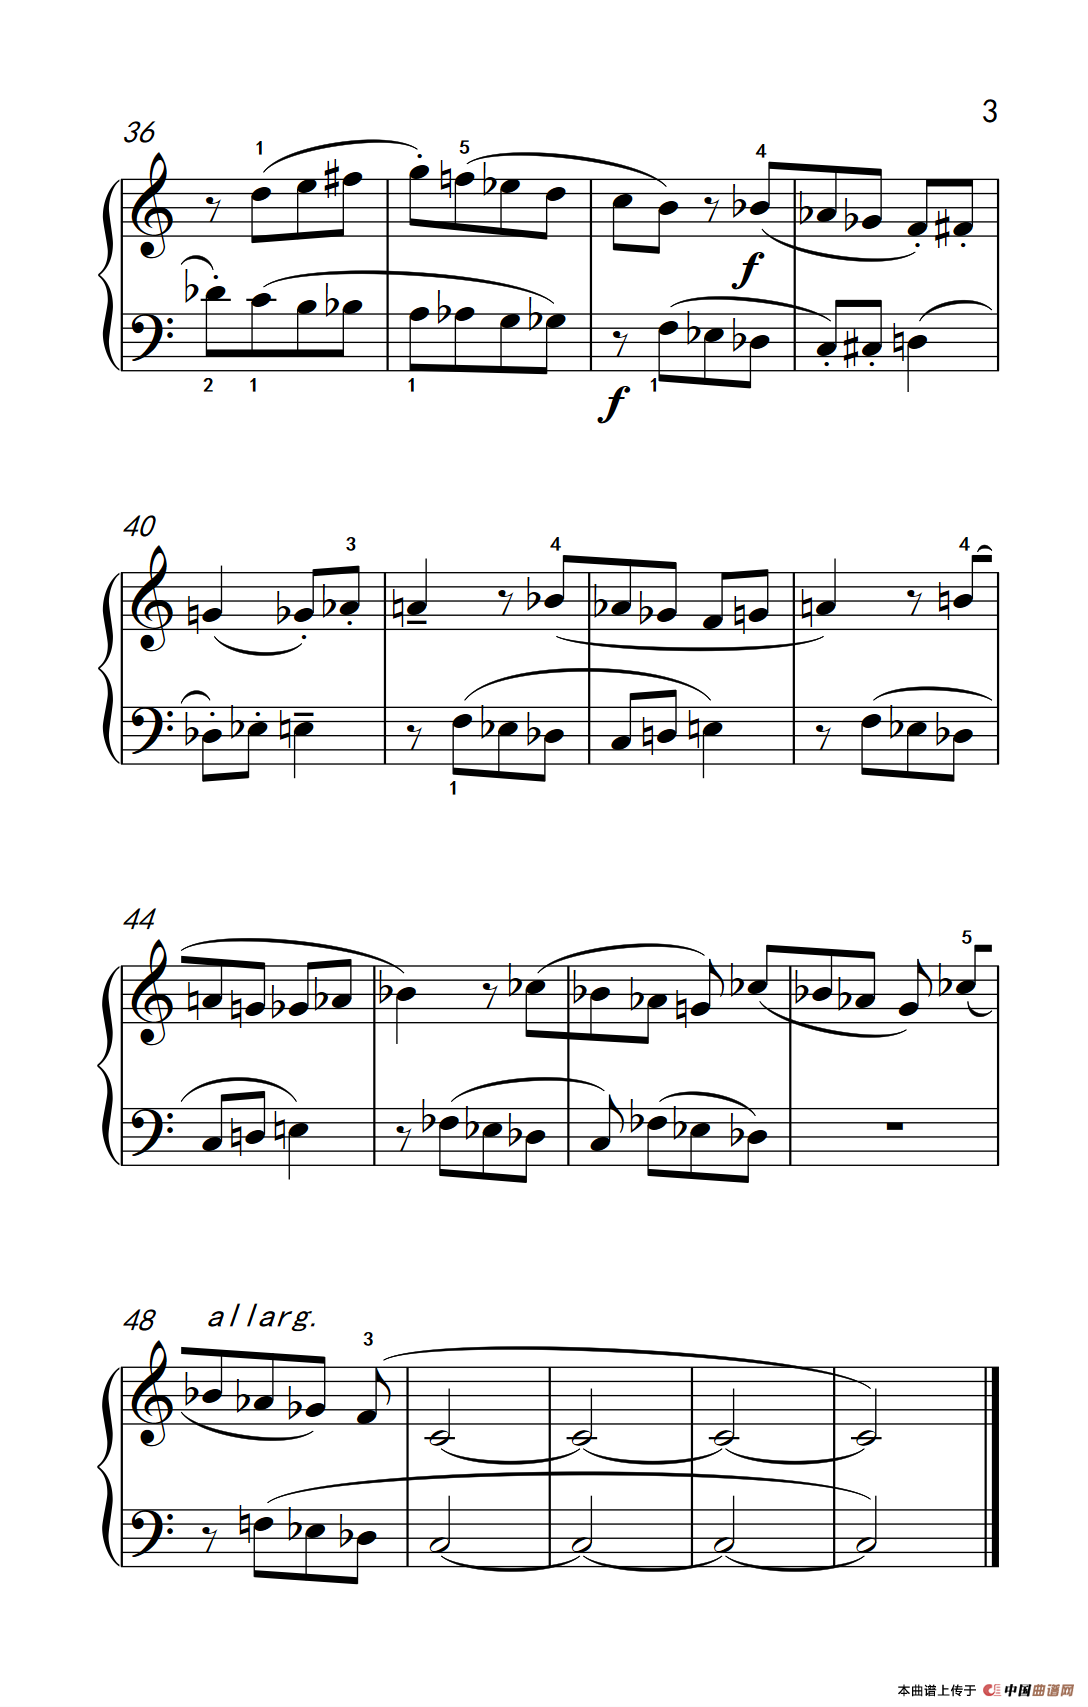 《断奏和连奏》钢琴曲谱图分享